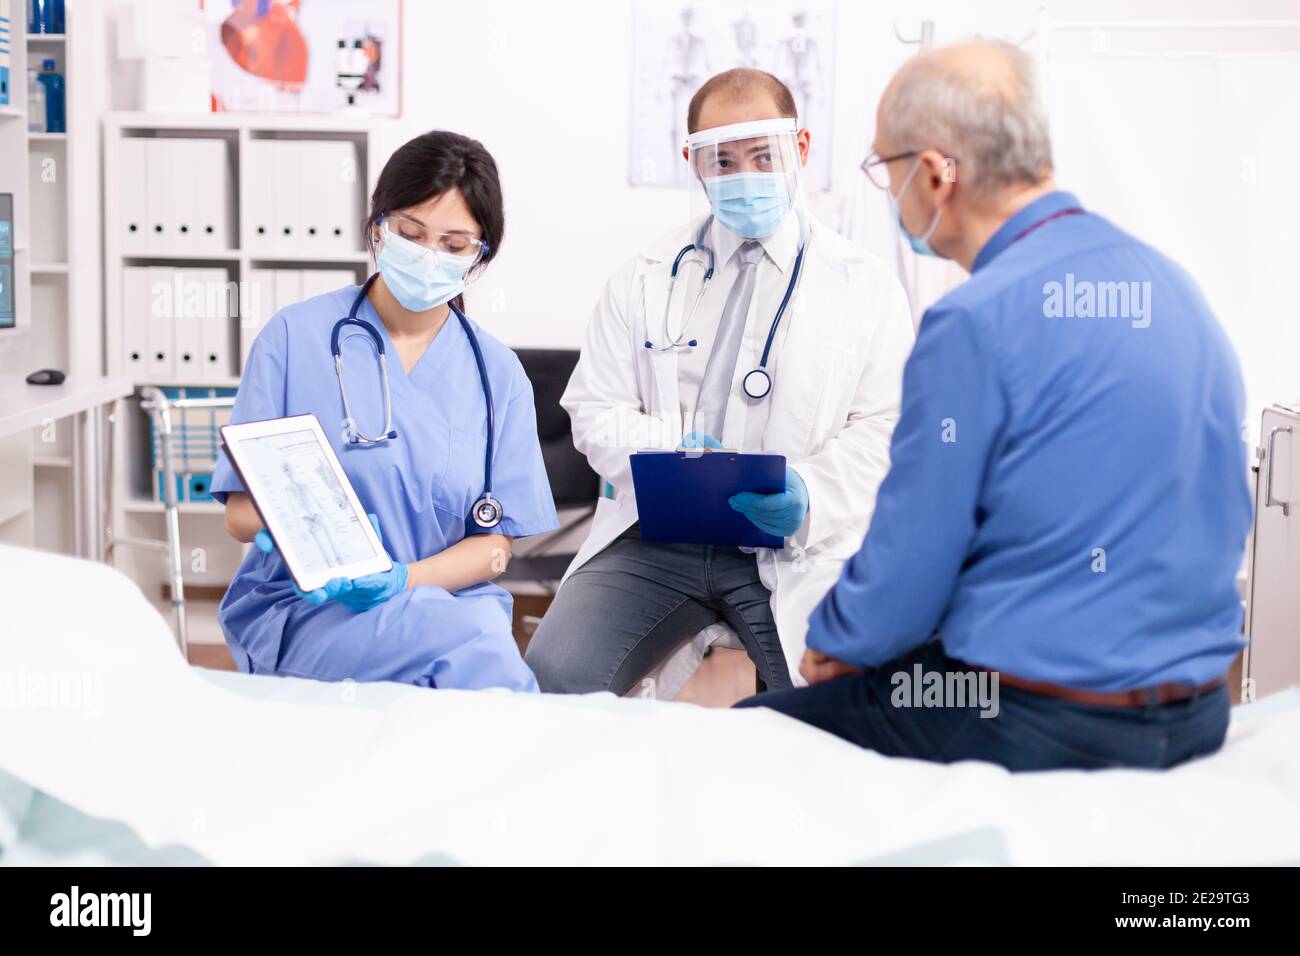 Medico sanitario che spiega l'anatomia umana all'uomo anziano mostrando PC tablet in tempo di pandemia di covidio. Personale medico in uniforme discutere di lesioni ossee con il paziente durante l'epidemia di coronavirus. Foto Stock